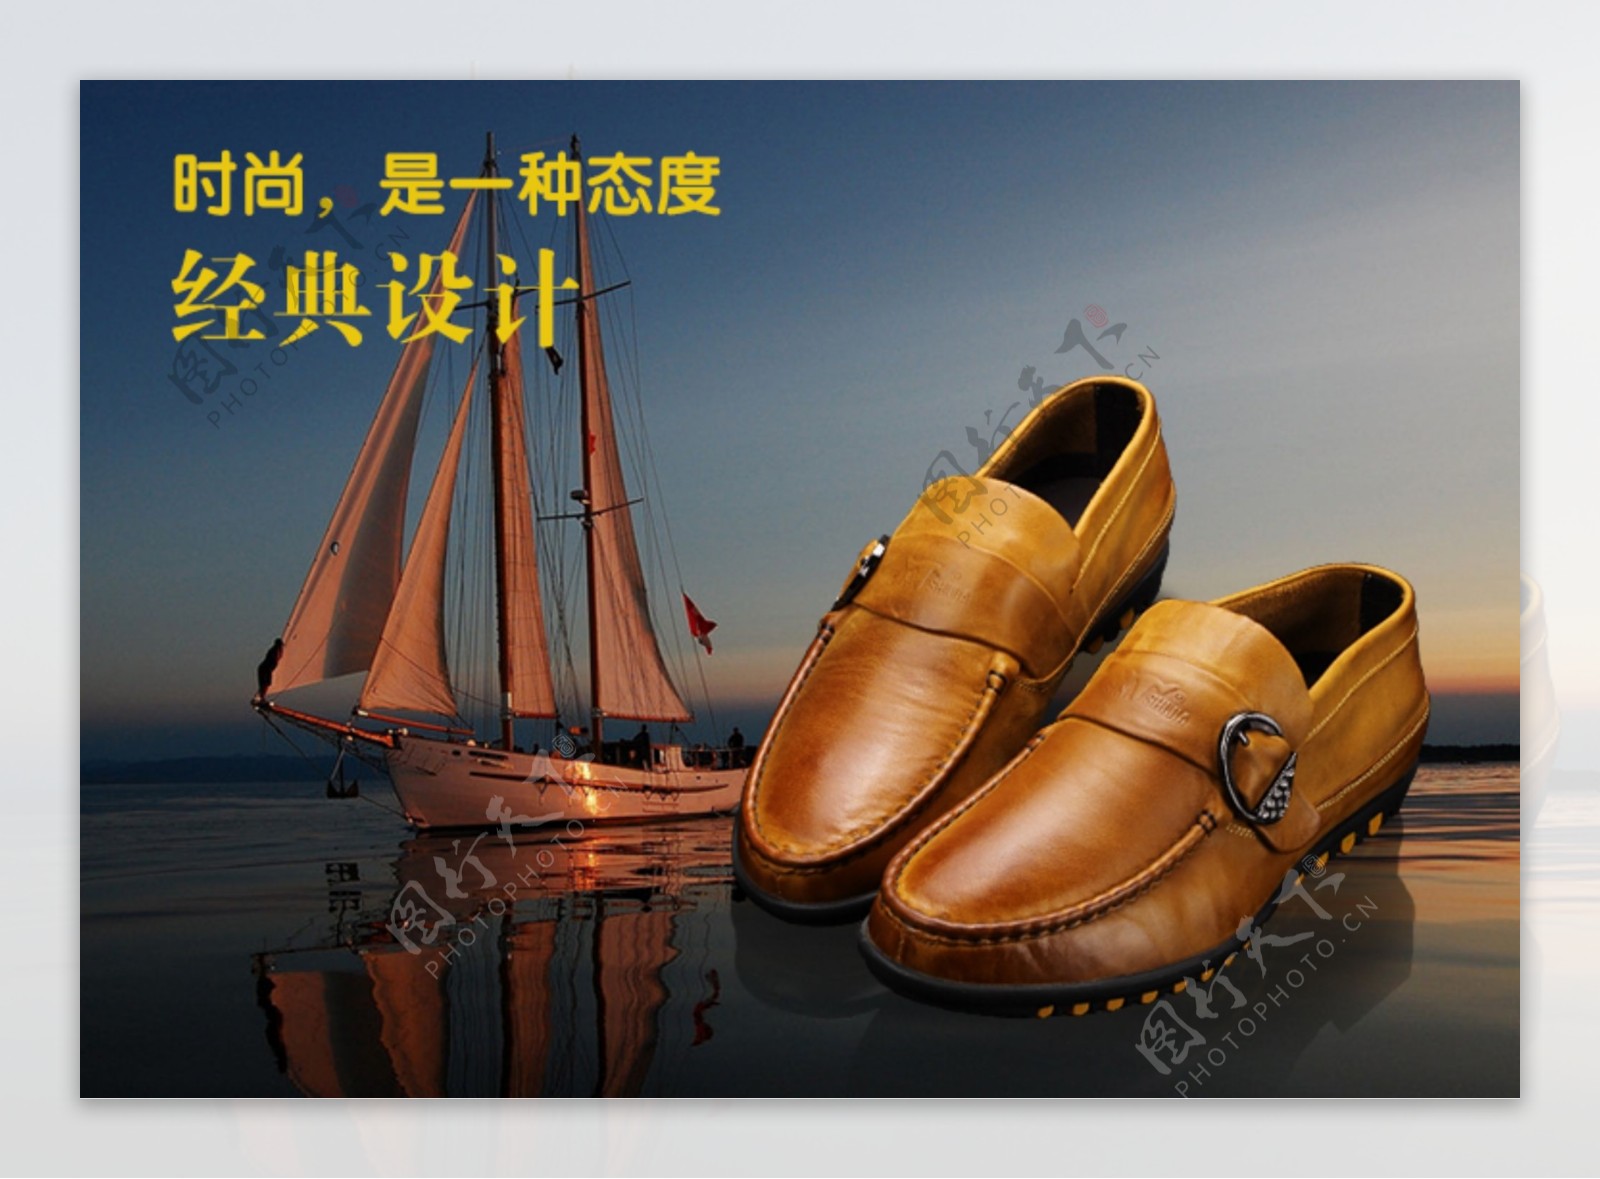 淘宝男鞋广告图片